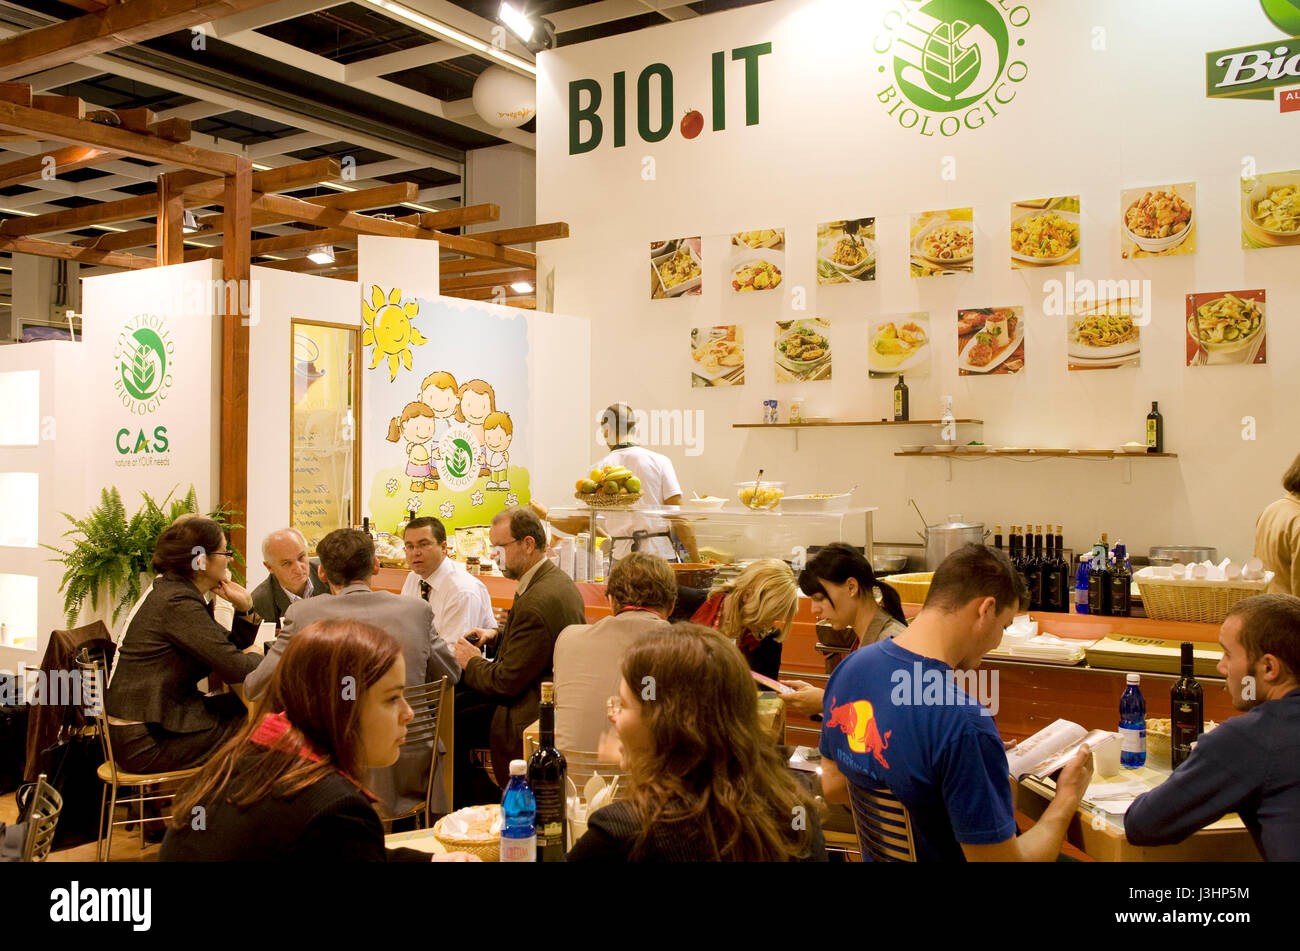 Germania, Colonia, l'Anuga food e bevande commercio equo presso il centro espositivo nel quartiere Deutz, stallo dell'azienda Bioitalia. Foto Stock